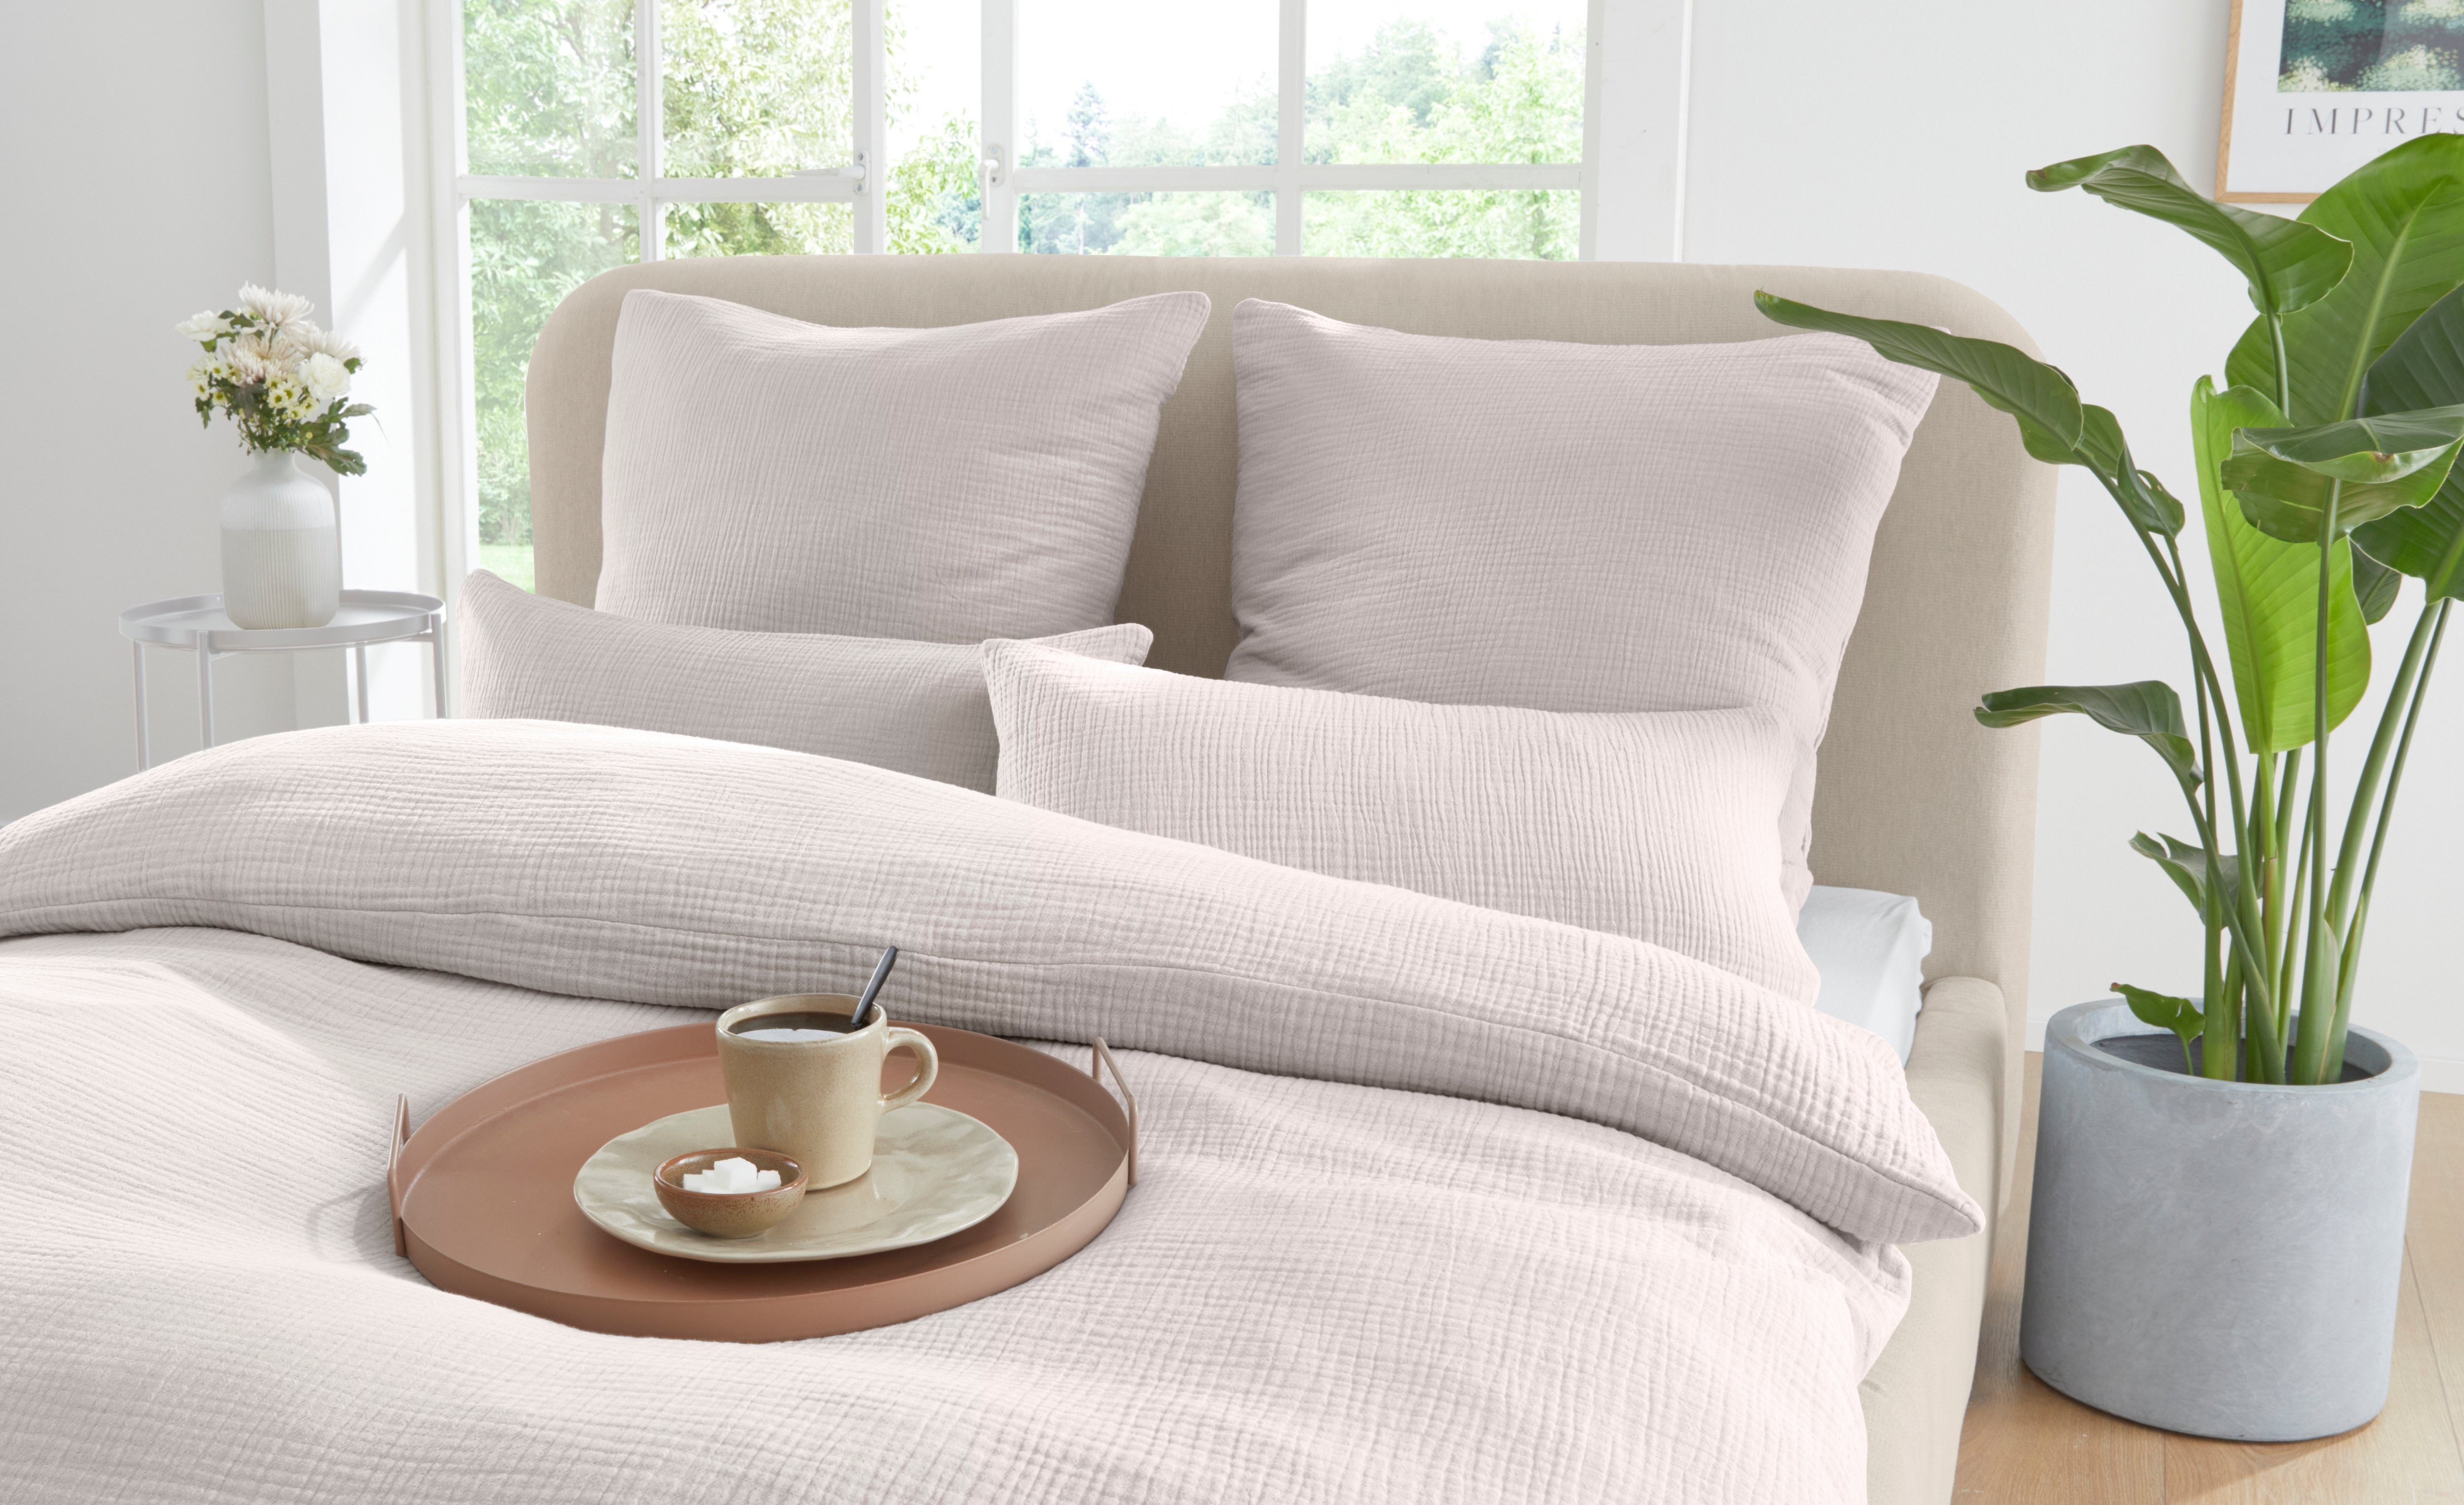 Bettwäsche Svensby in Gr. 135x200 oder 155x220 cm, andas, Musselin, 2 teilig,  Bettwäsche aus Baumwolle in Musselin-Qualität, unifarbene Bettwäsche